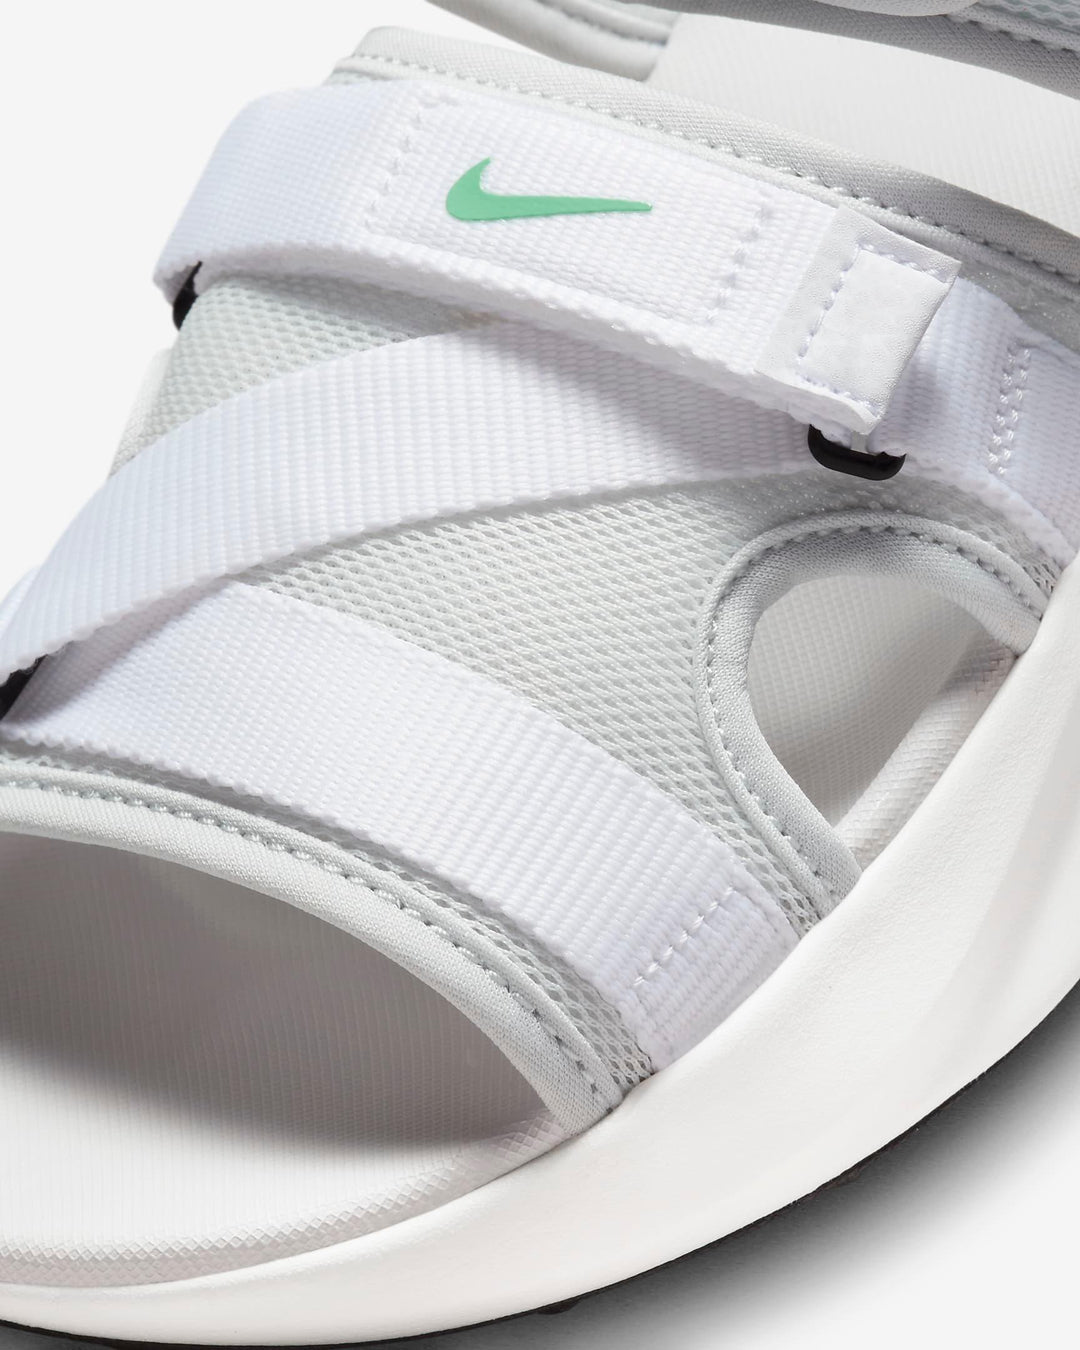 Giày Nike Air Max Sol Men Sandals #Photon Dust - Kallos Vietnam